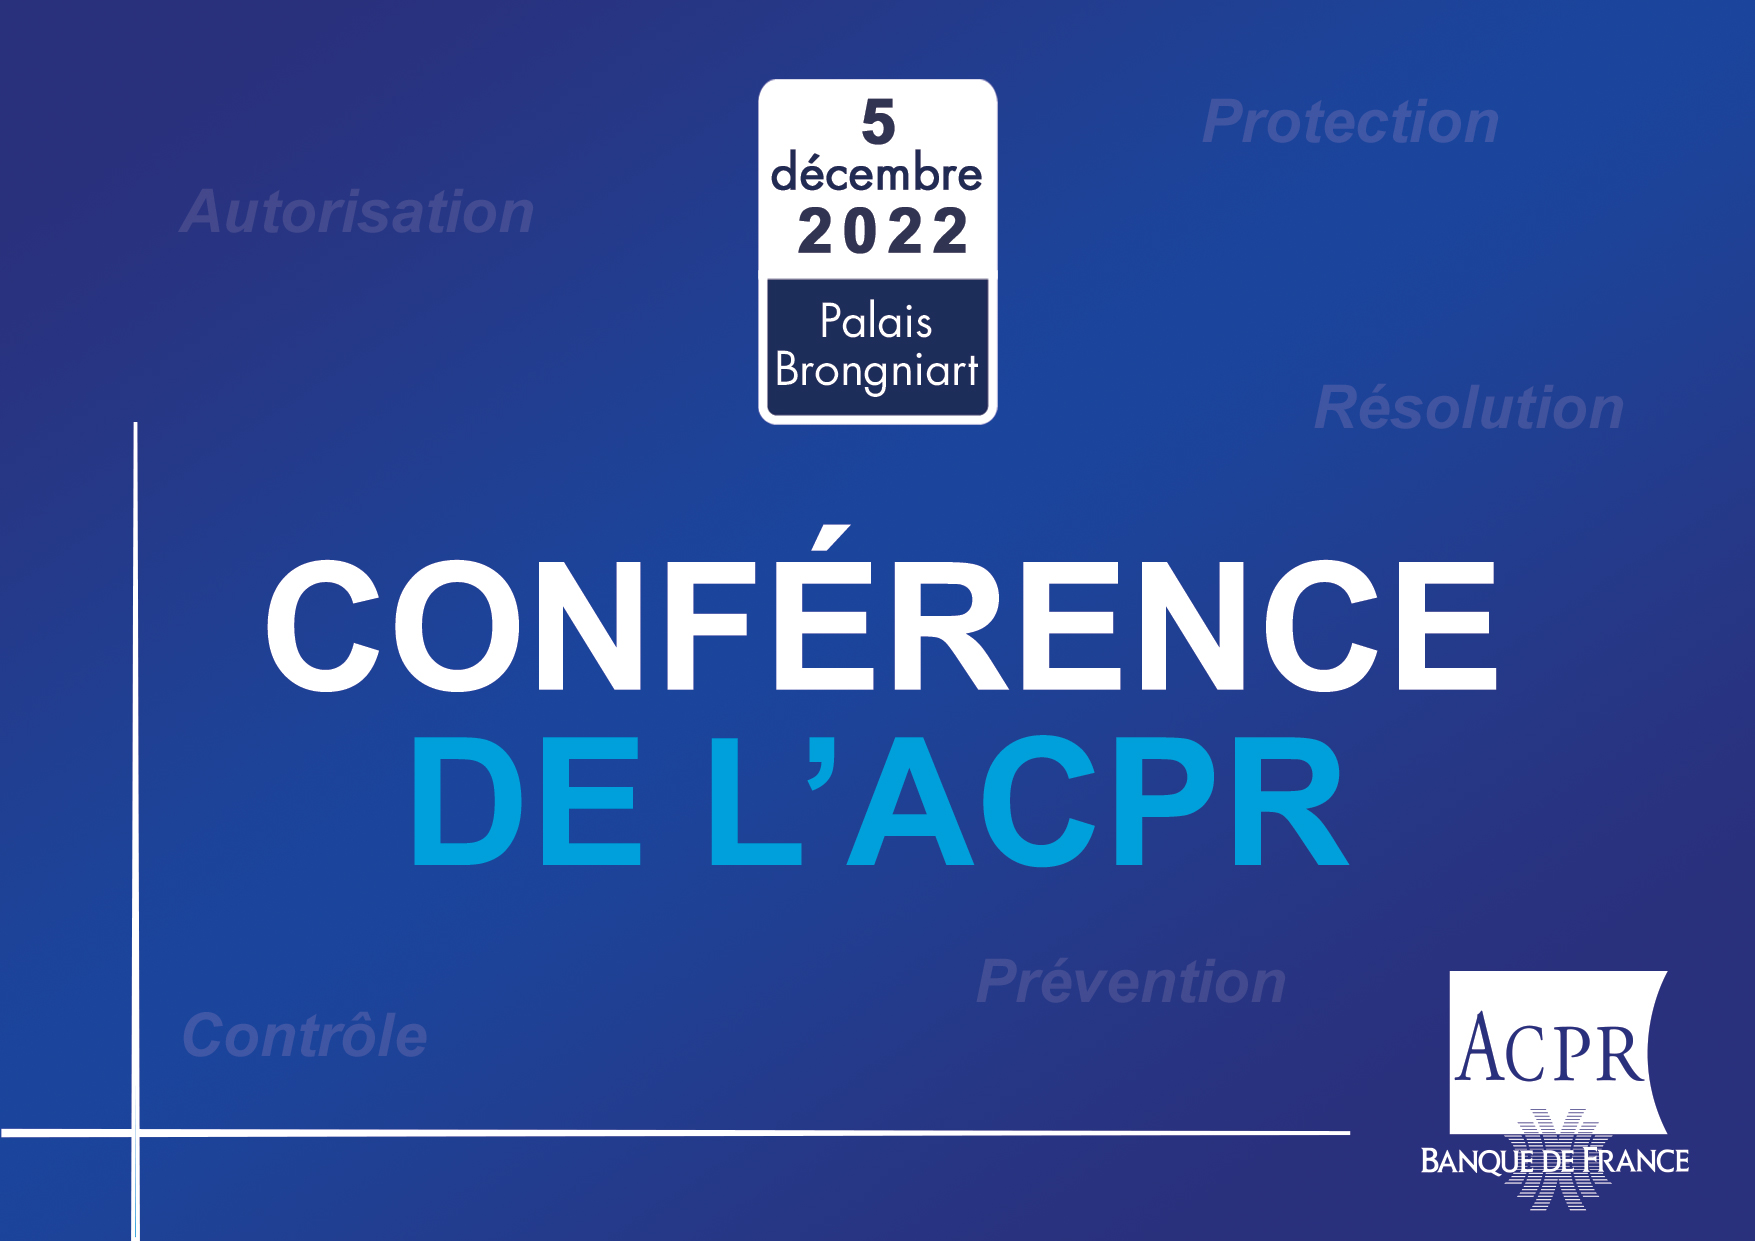 Visuel de la conférence de l'ACPR du 5 décembre 2022